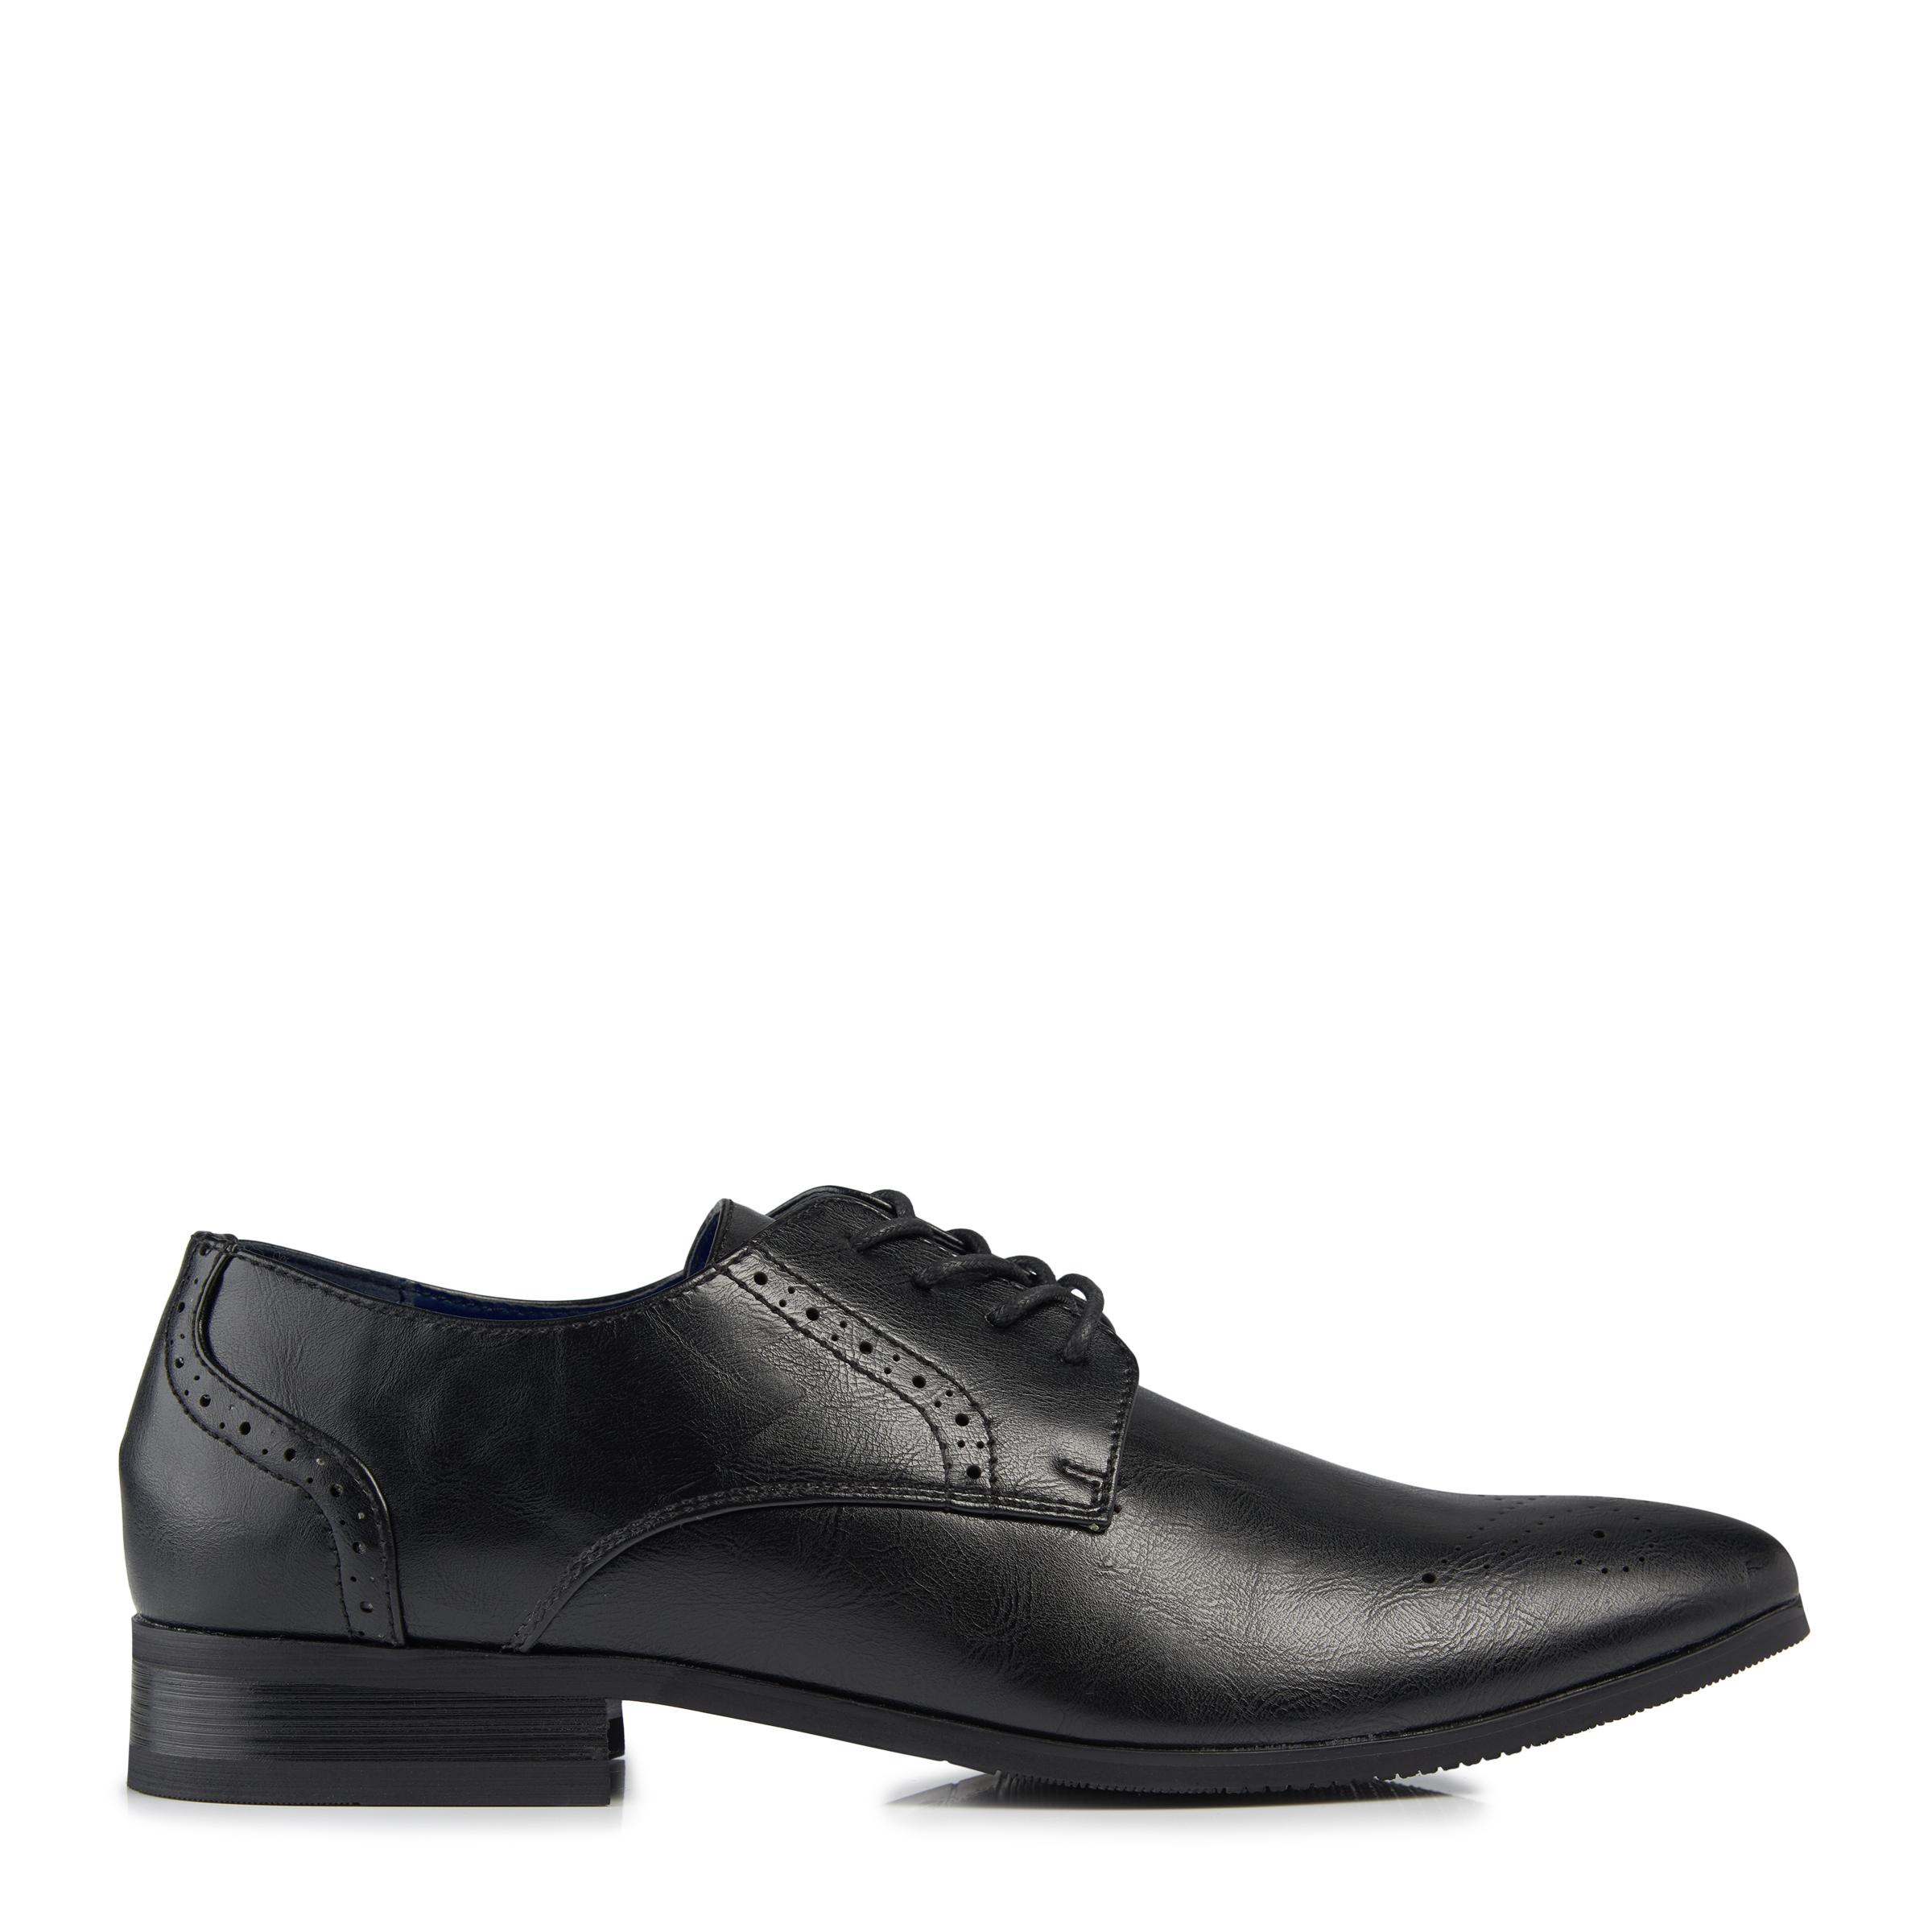 Men's Shoes | Shop Formal & Casual shoes| Truworths